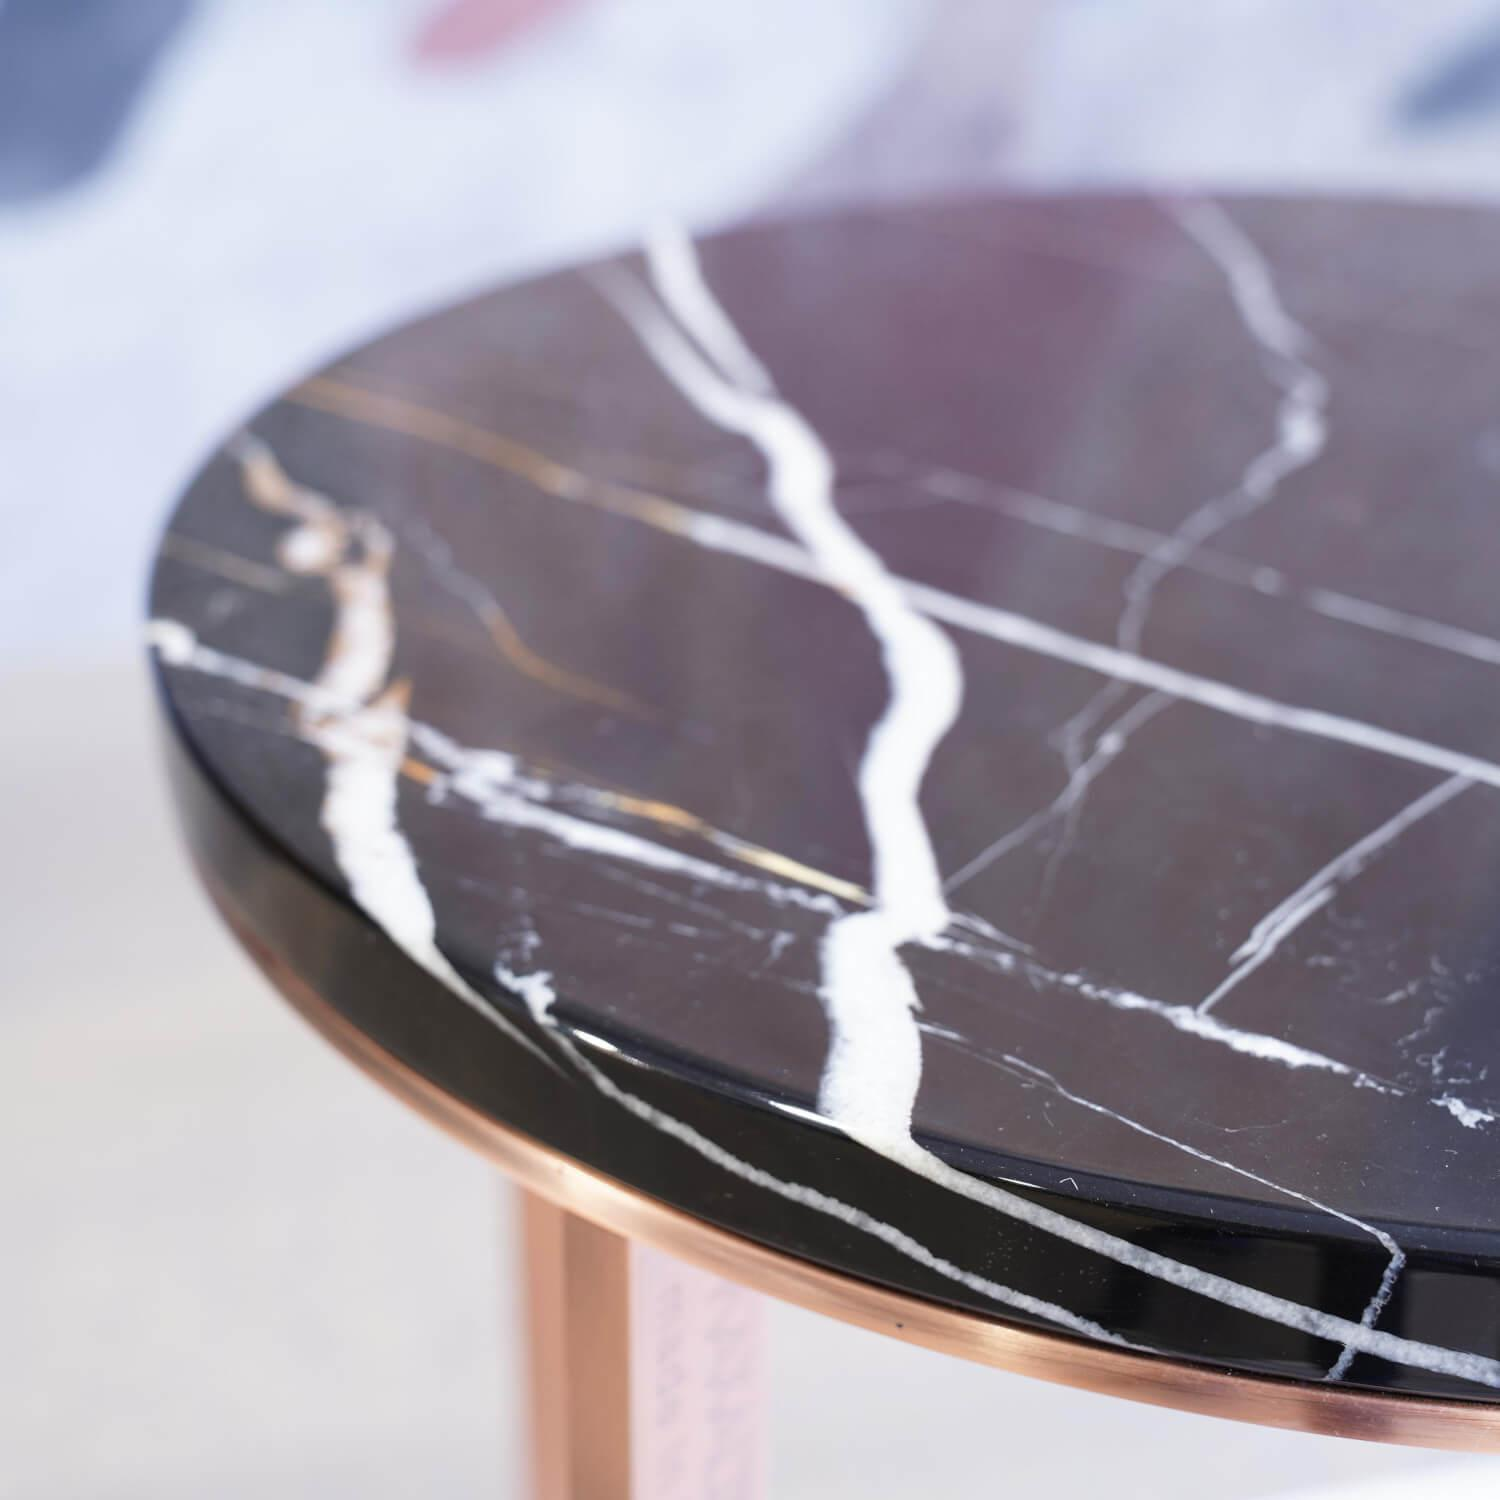 Kleiner Runder Tisch Lithos Marmor Sahara Noir Glänzend Gestellfarbe Kupfer